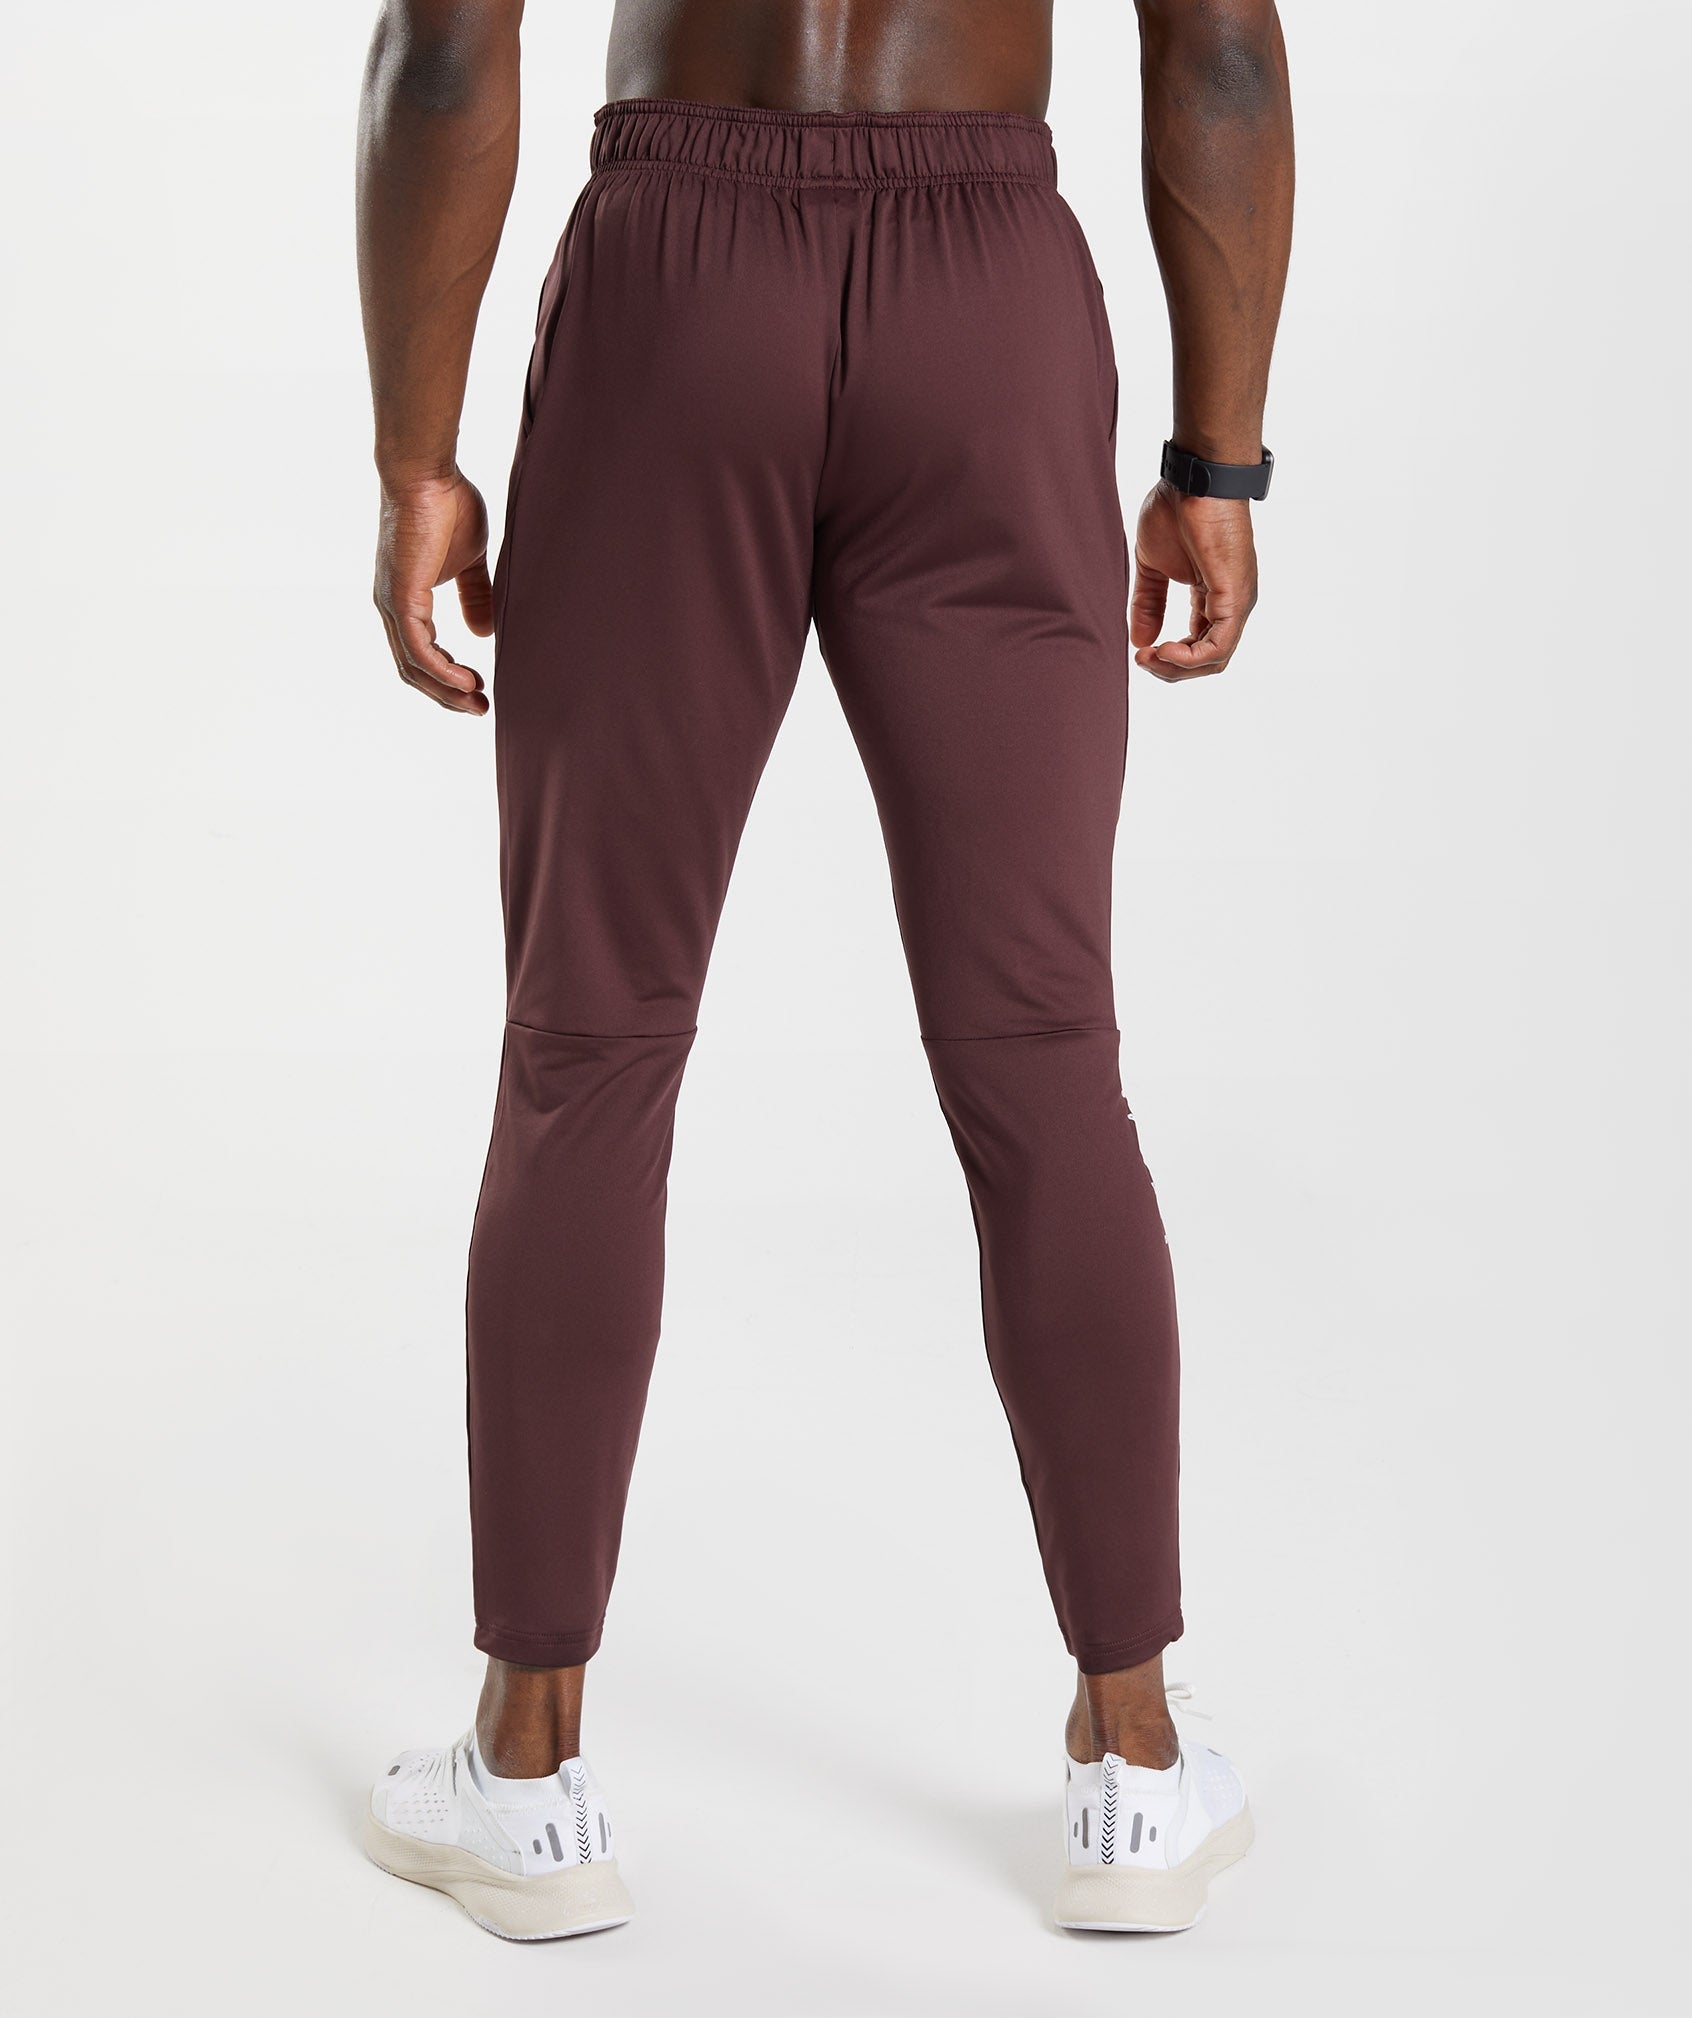 Pants Jogger Deportivo Hombre Gym Slim Fit Super Elastico Con Bolsas y  Cierre PHD106, Moda de Mujer